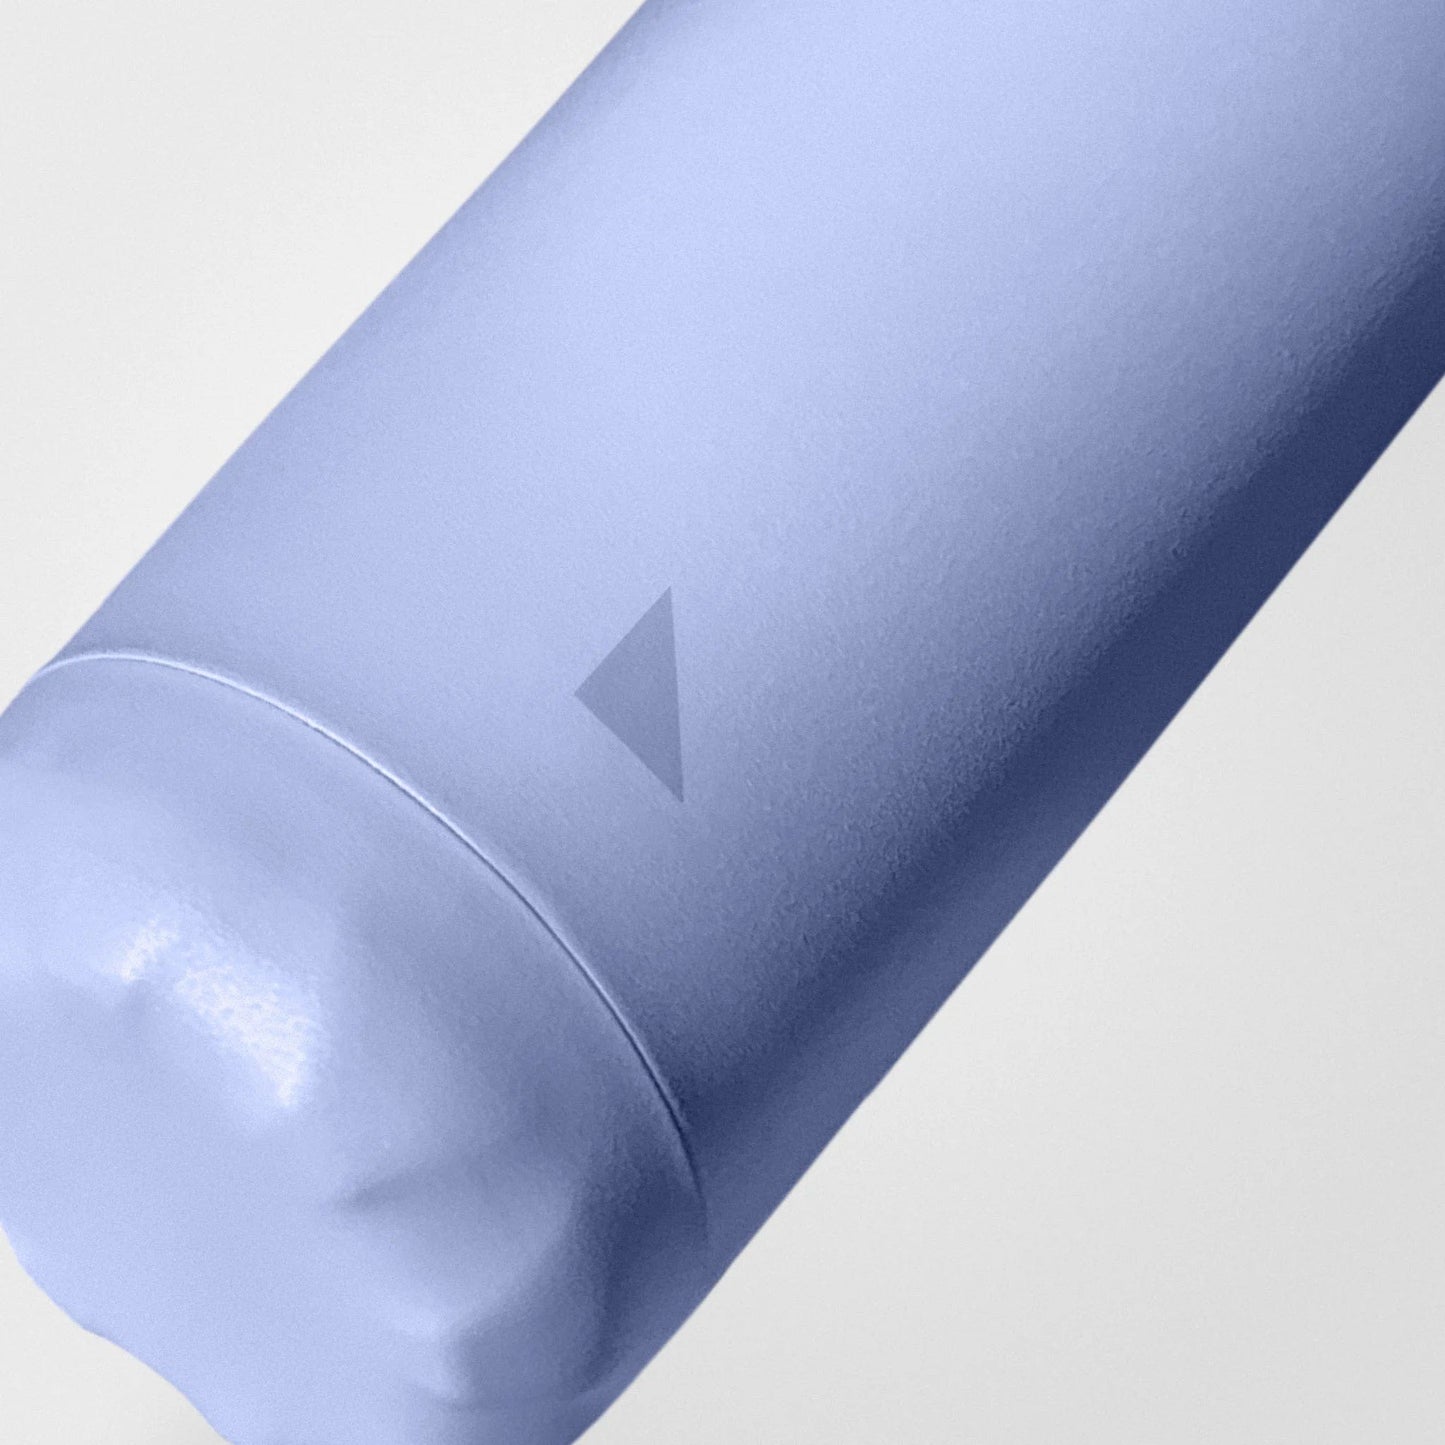 Bundle – Thermosflasche und Notizbuch aus Steinpapier, Vista Blau